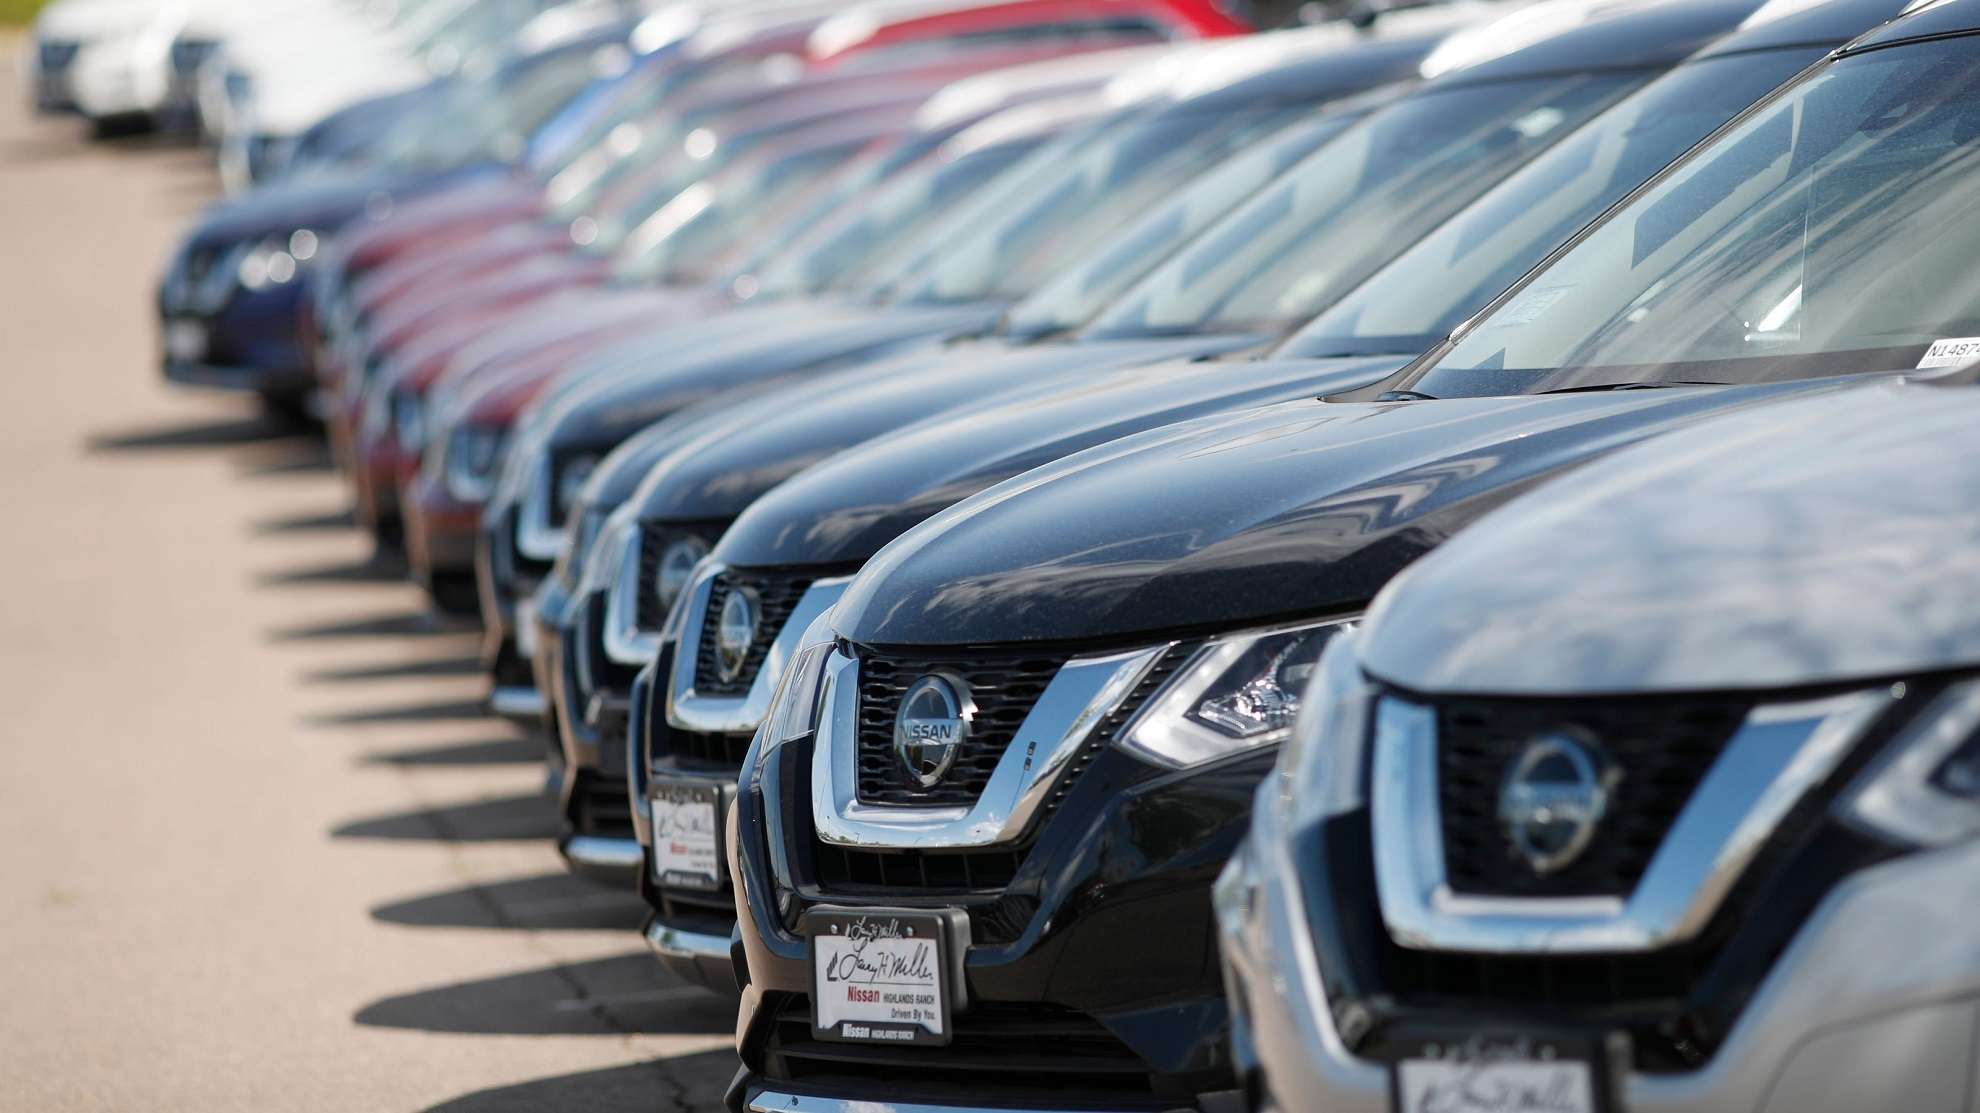 ΕΛΣΤΑΤ: Εντυπωσιακή αύξηση 97,5% στην αγορά αυτοκινήτου τον Μάρτιο